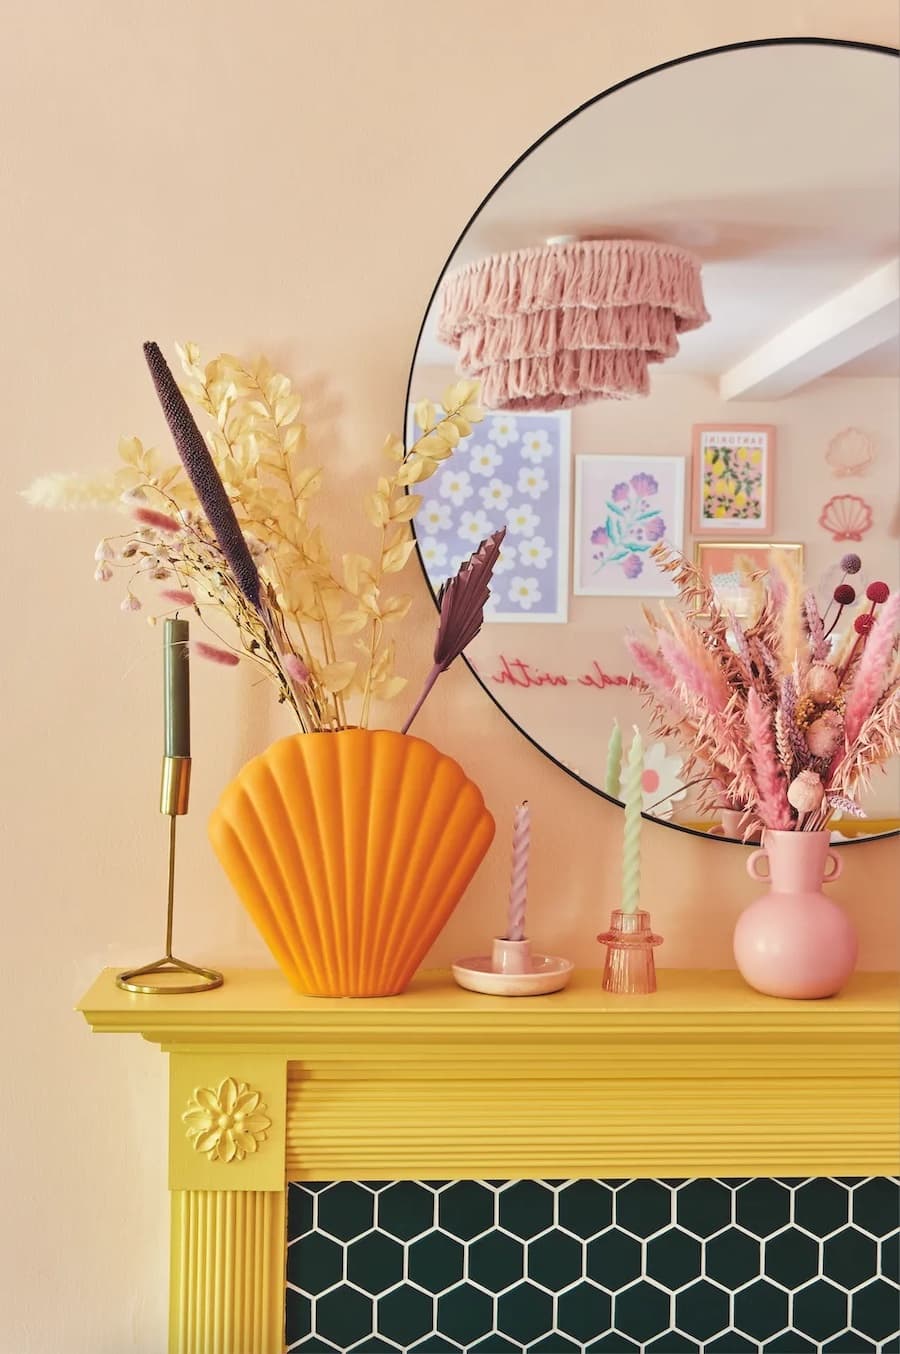 Chimenea empotrada con marco de color amarillo. Sobre ella hay portavelas rosados de diferentes tamaños y uno dorado. También hay floreros, uno grande de color naranjo y otro tipo vasija color rosado, ambos con flores secas. Espejo redondo, muro damasco